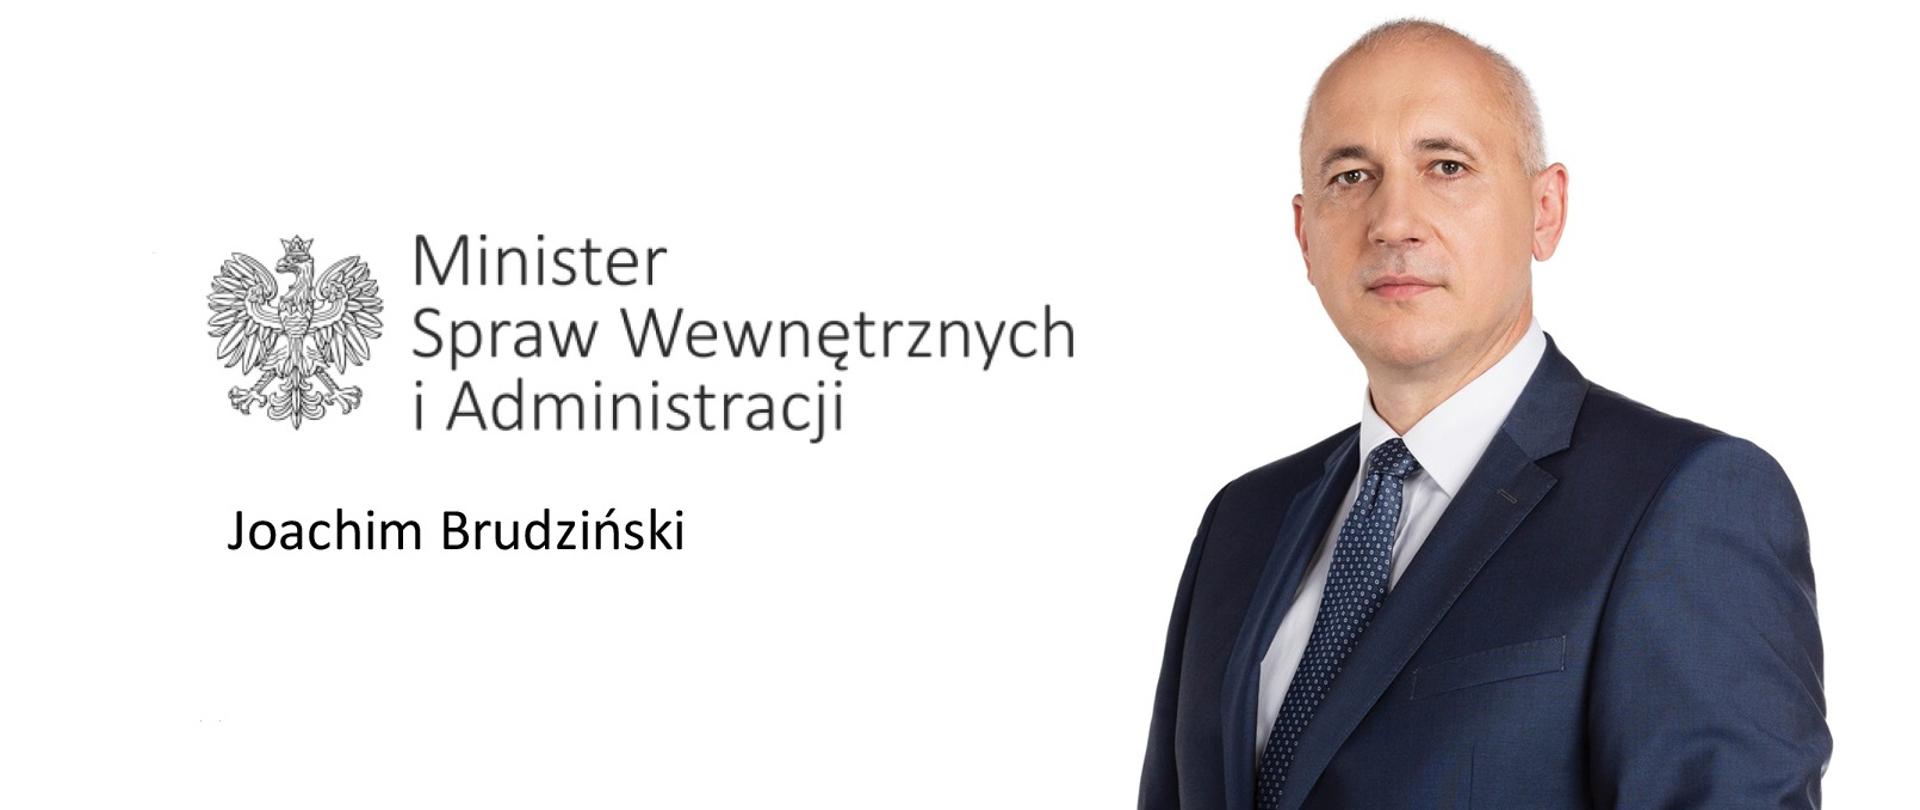 Minister Spraw Wewnętrznych i Administracji Joachim Brudziński na białym tle z logo ministerstwa